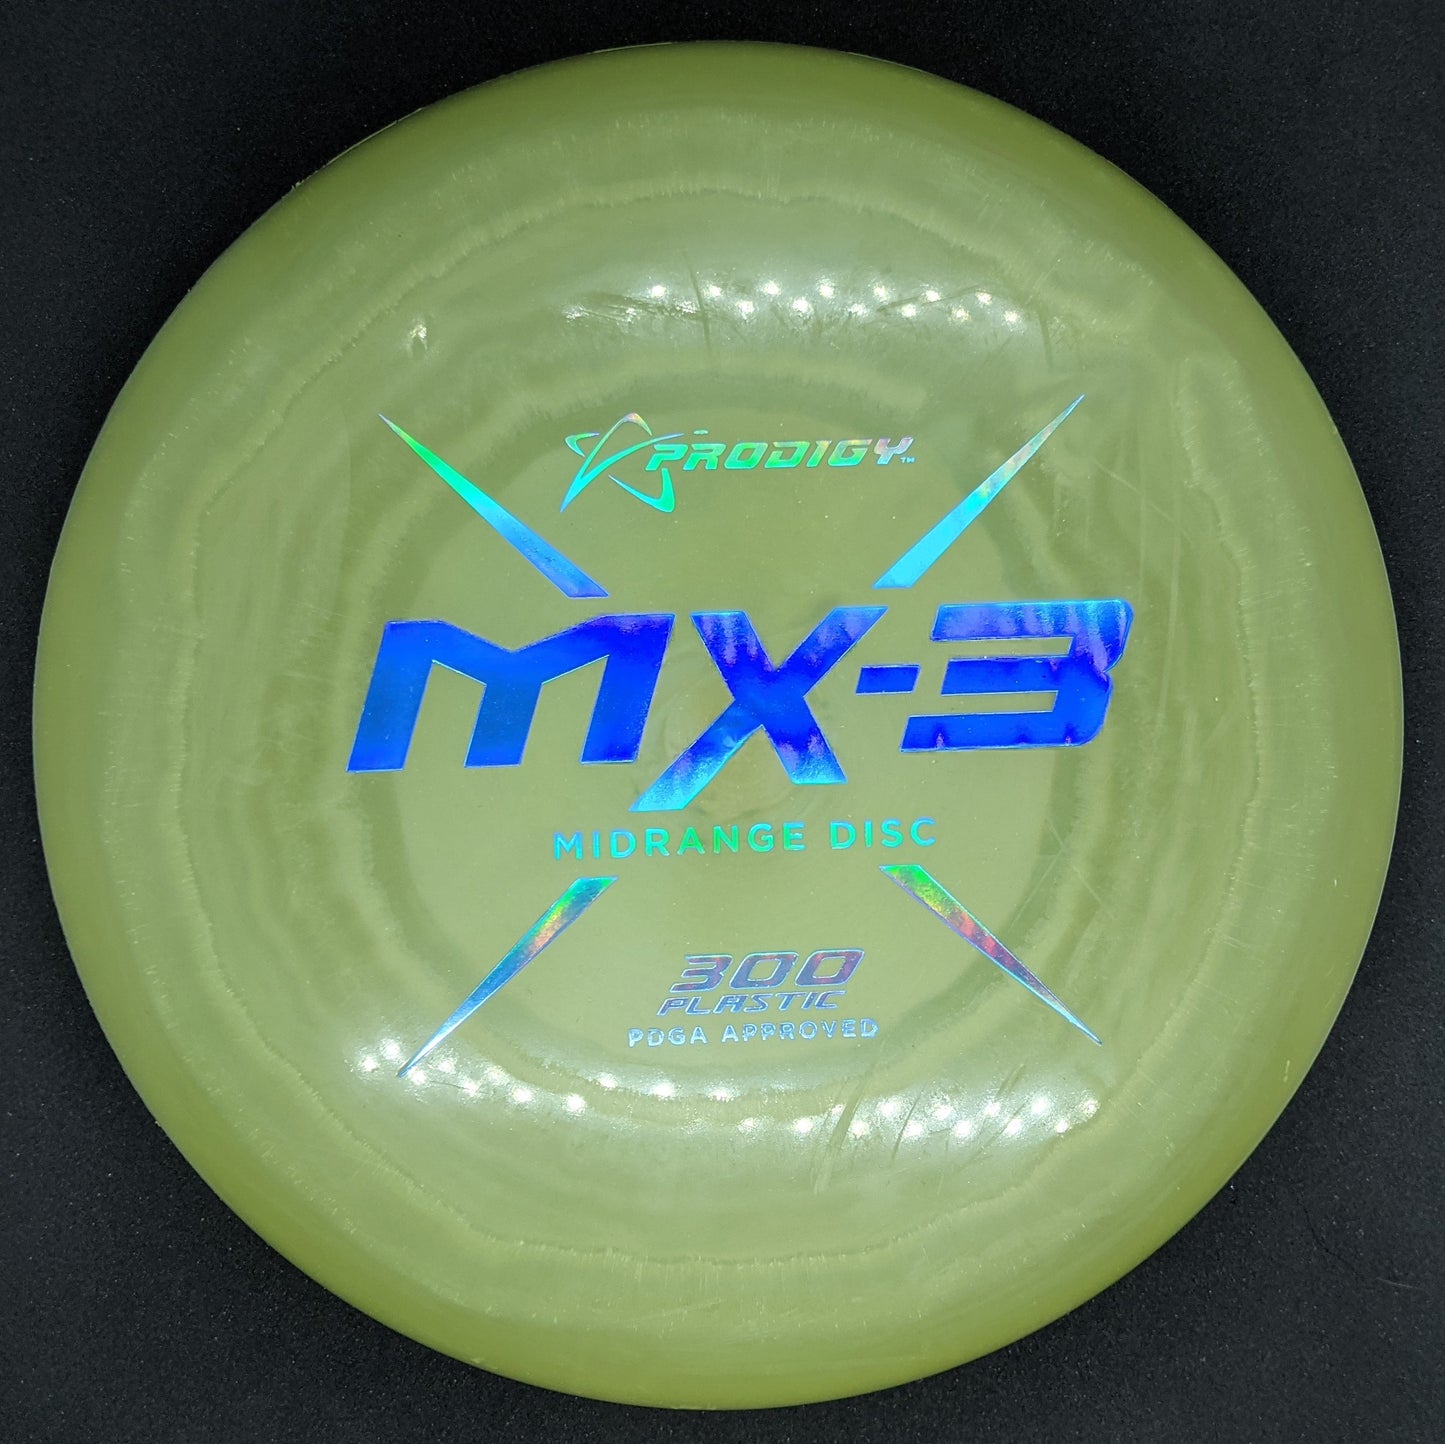 Prodigy - MX3 - 300 Spectrum